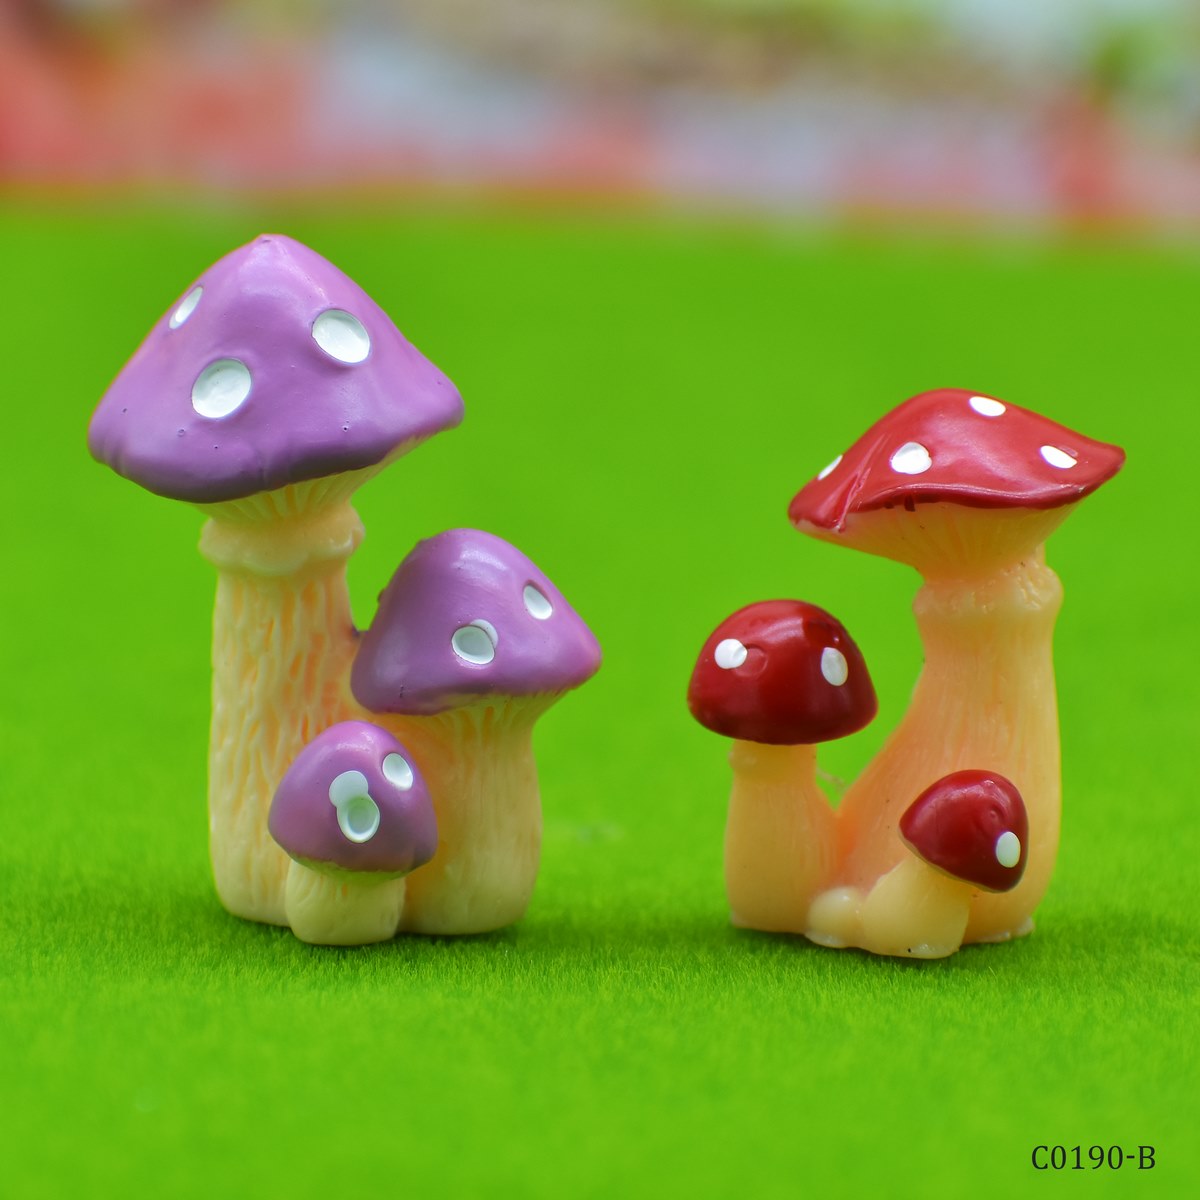 jags-mumbai Miniature Miniature Model Mushroom 3 Plant 2Pcs